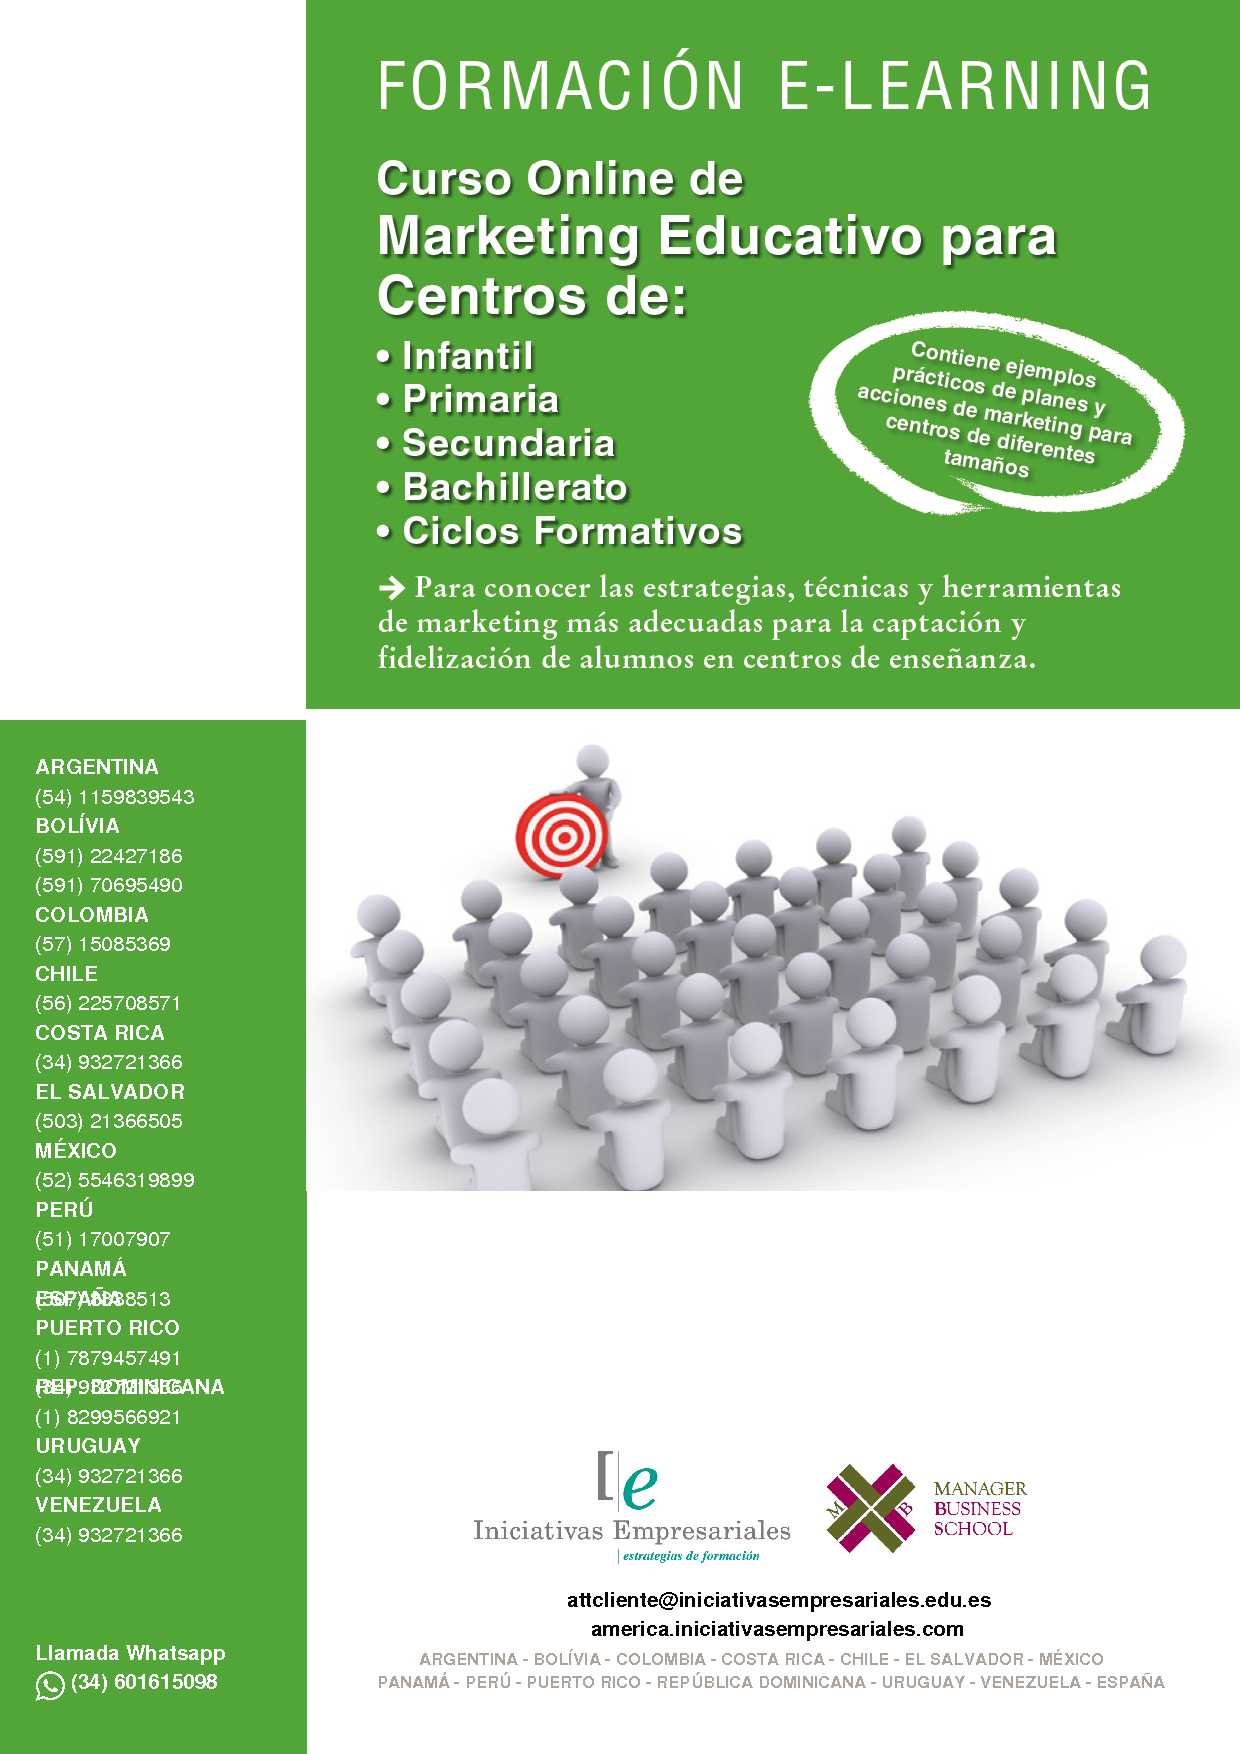 Marketing Educativo para Centros de:Infantil, Primaria, Secundaria, Bachillerato y Ciclos Formativos